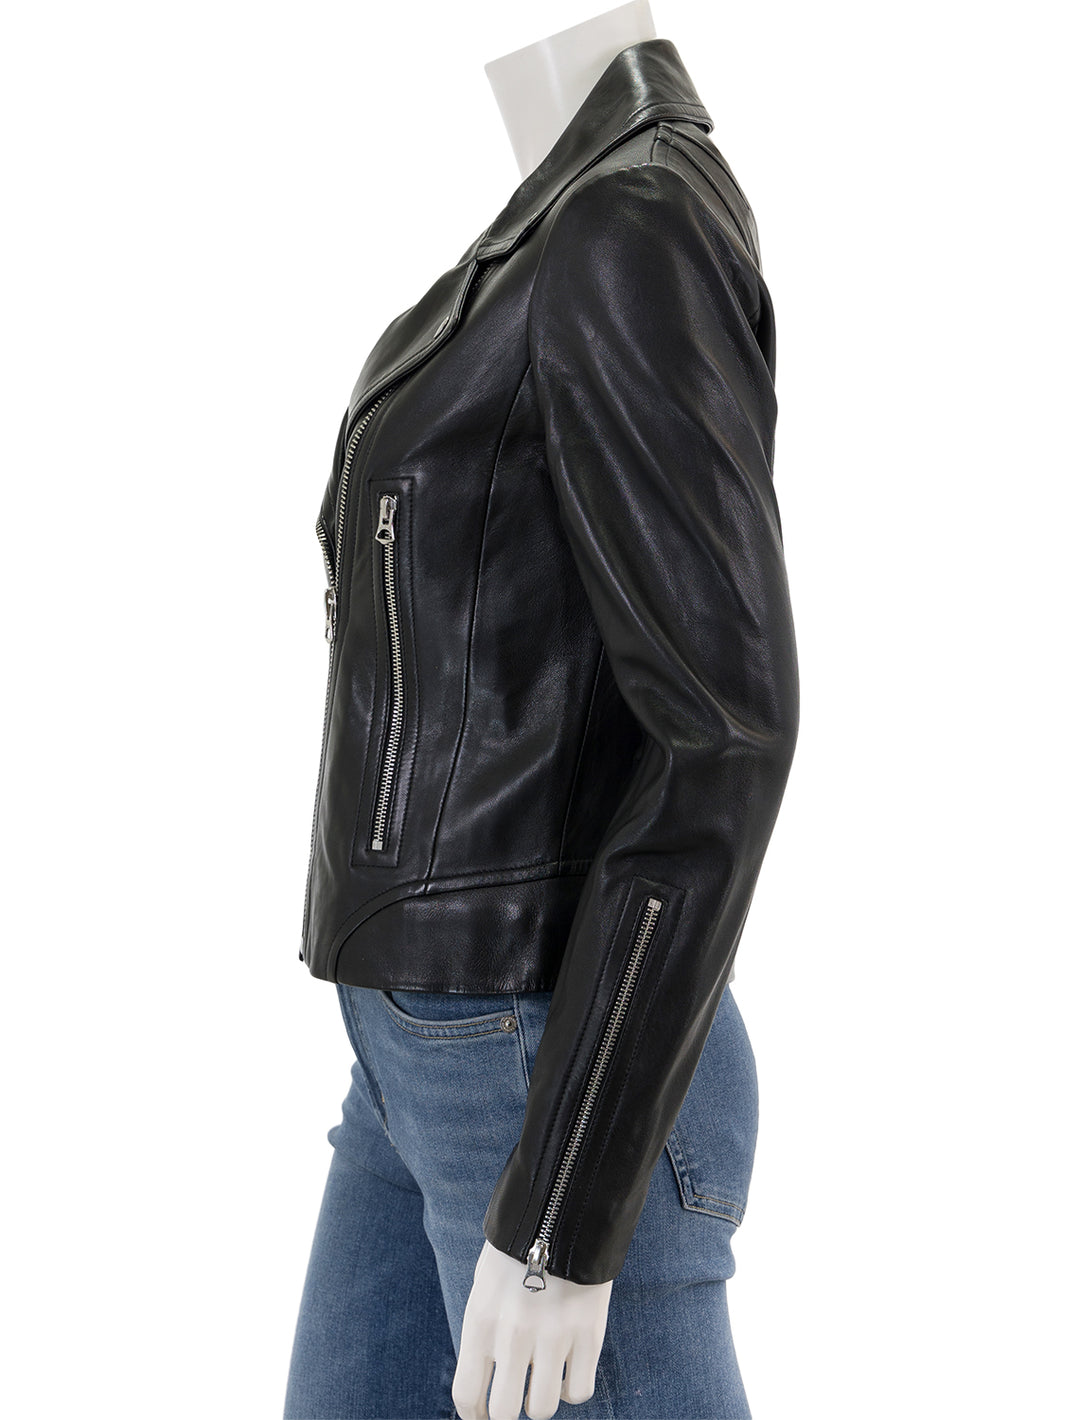 Side view of Rag & Bone's mack jacket in black.